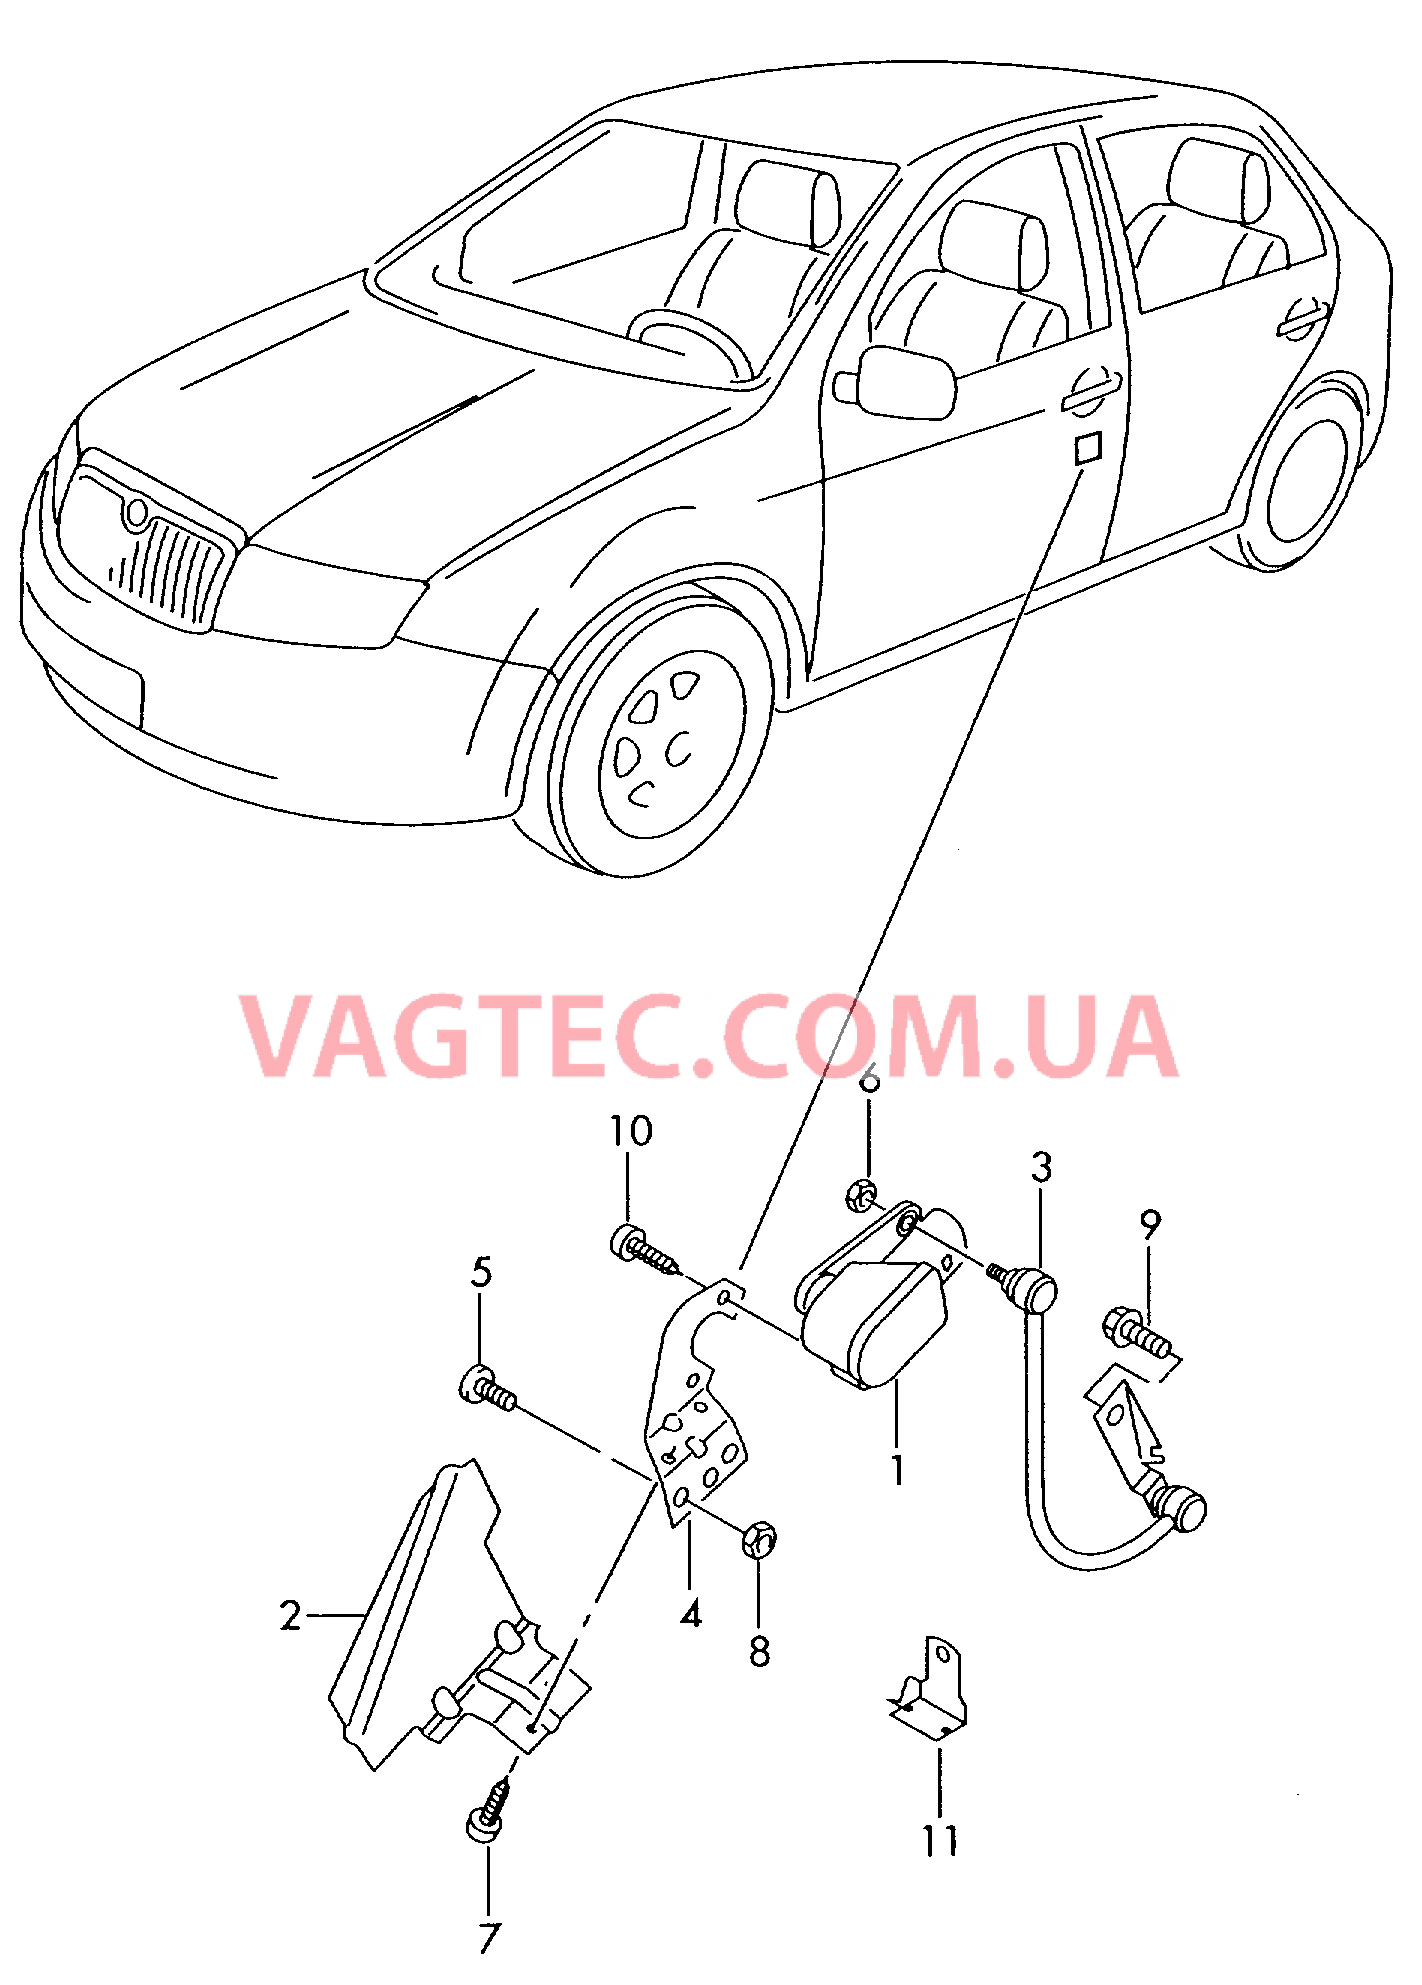 Регулятор угла наклона фар для а/м с автоматическим корректором фар  для SEAT Ibiza 2002-1